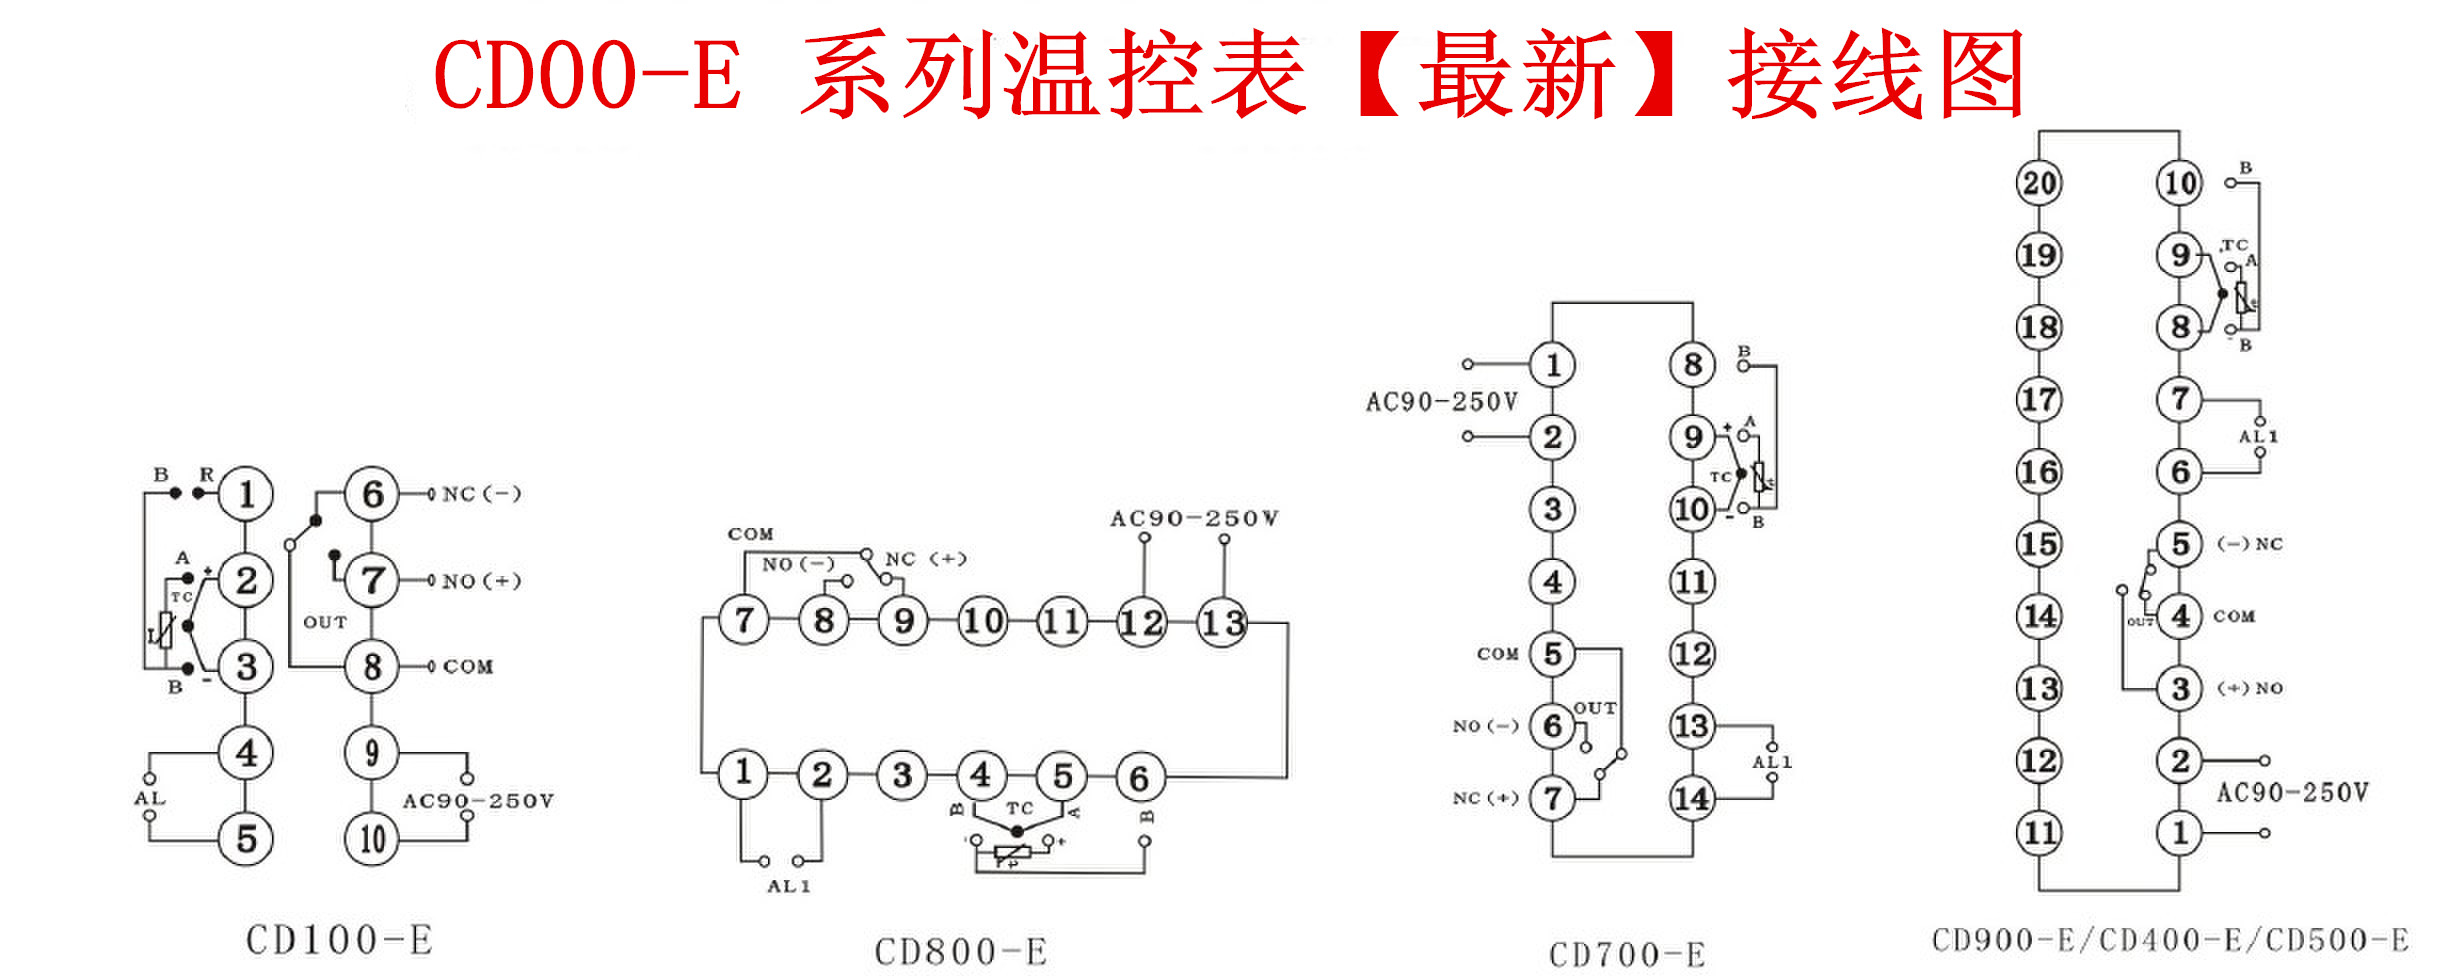 【注意】CD400-E接线图更改说明(图2)